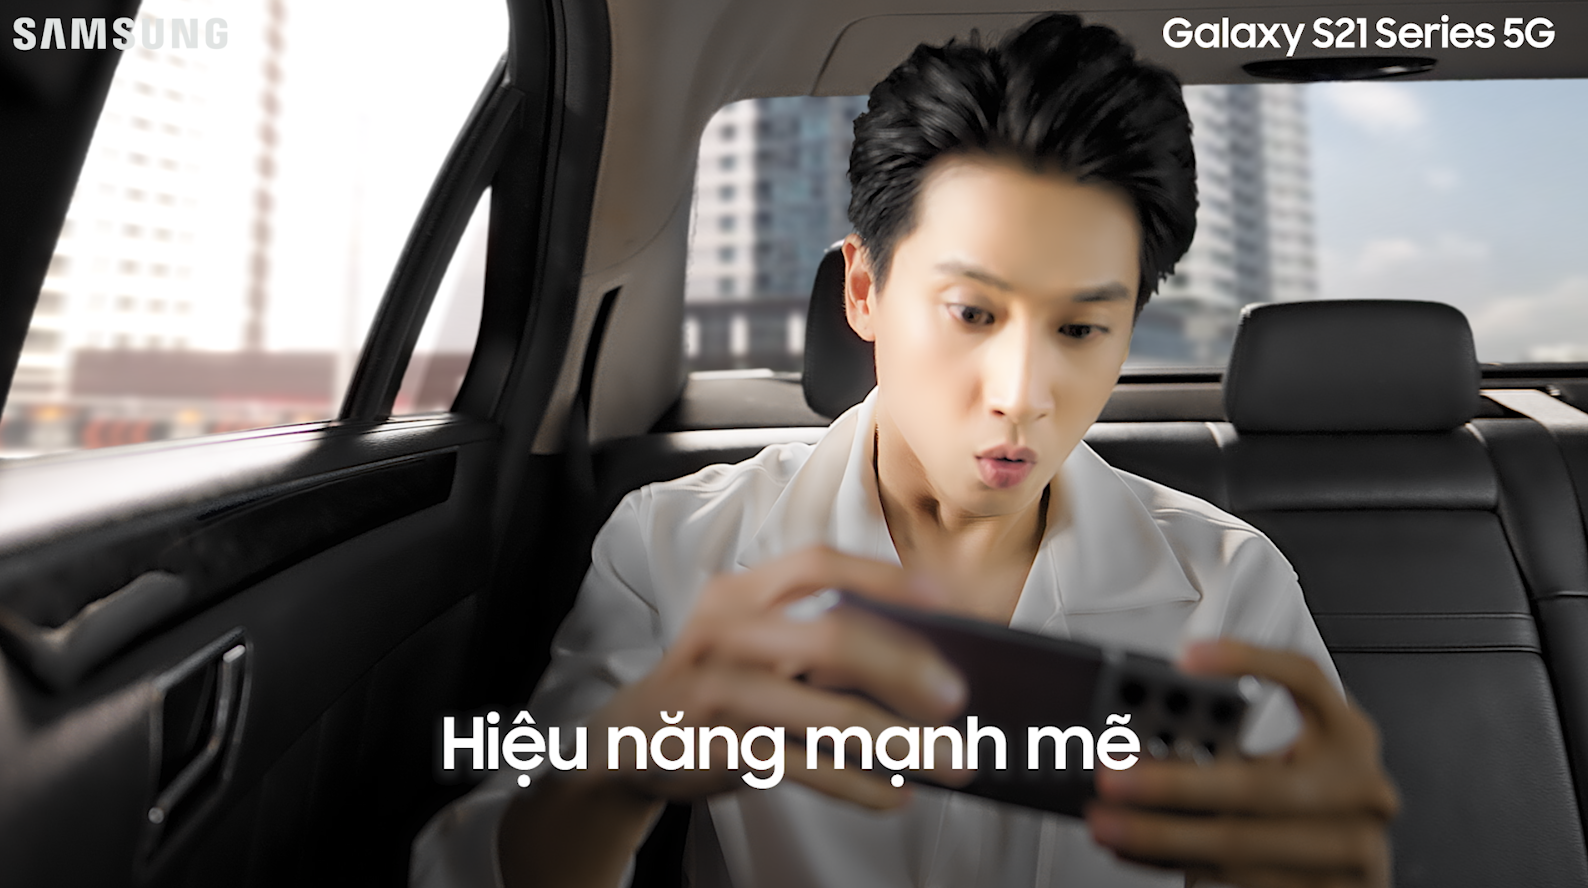 Samsung Galaxy S21 5G Download